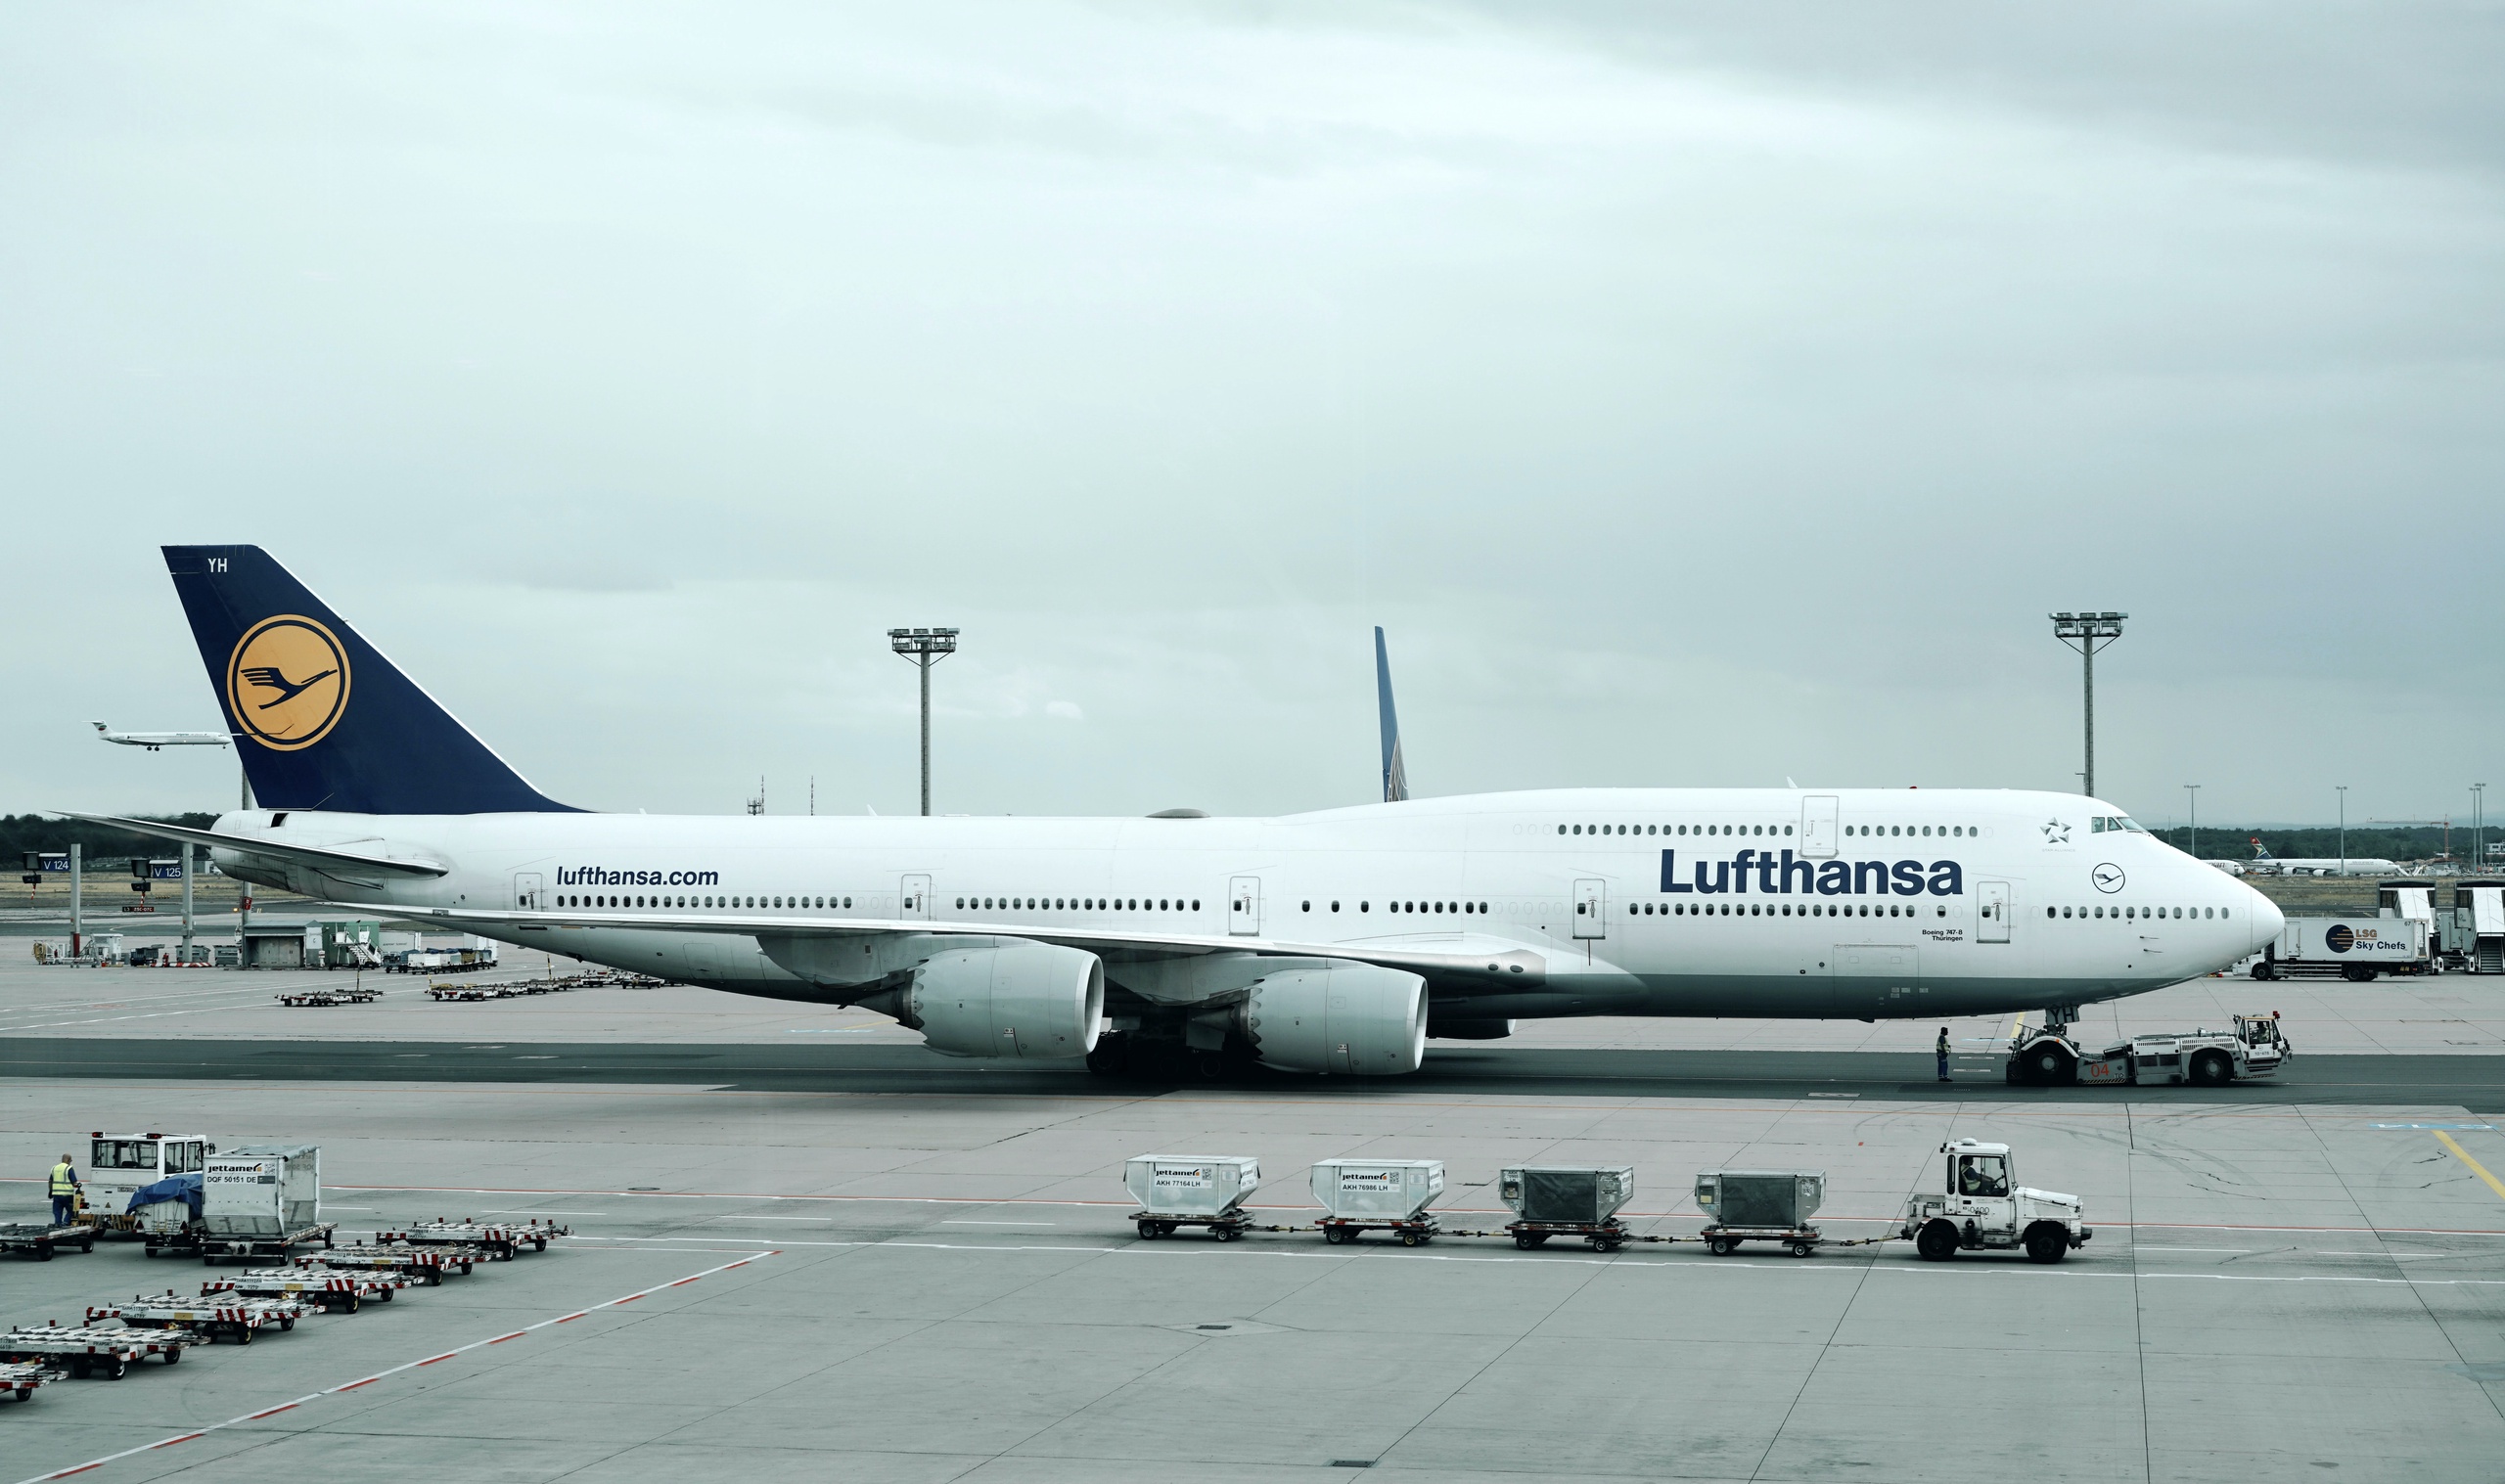 De gesprekken tussen Duitse luchtvaartmaatschappij Lufthansa en pilotenvakbond Vereinigung Cockpit hebben nog niks opgeleverd, meldt de bond, die een verbeterd bod voor een nieuwe cao afwees.